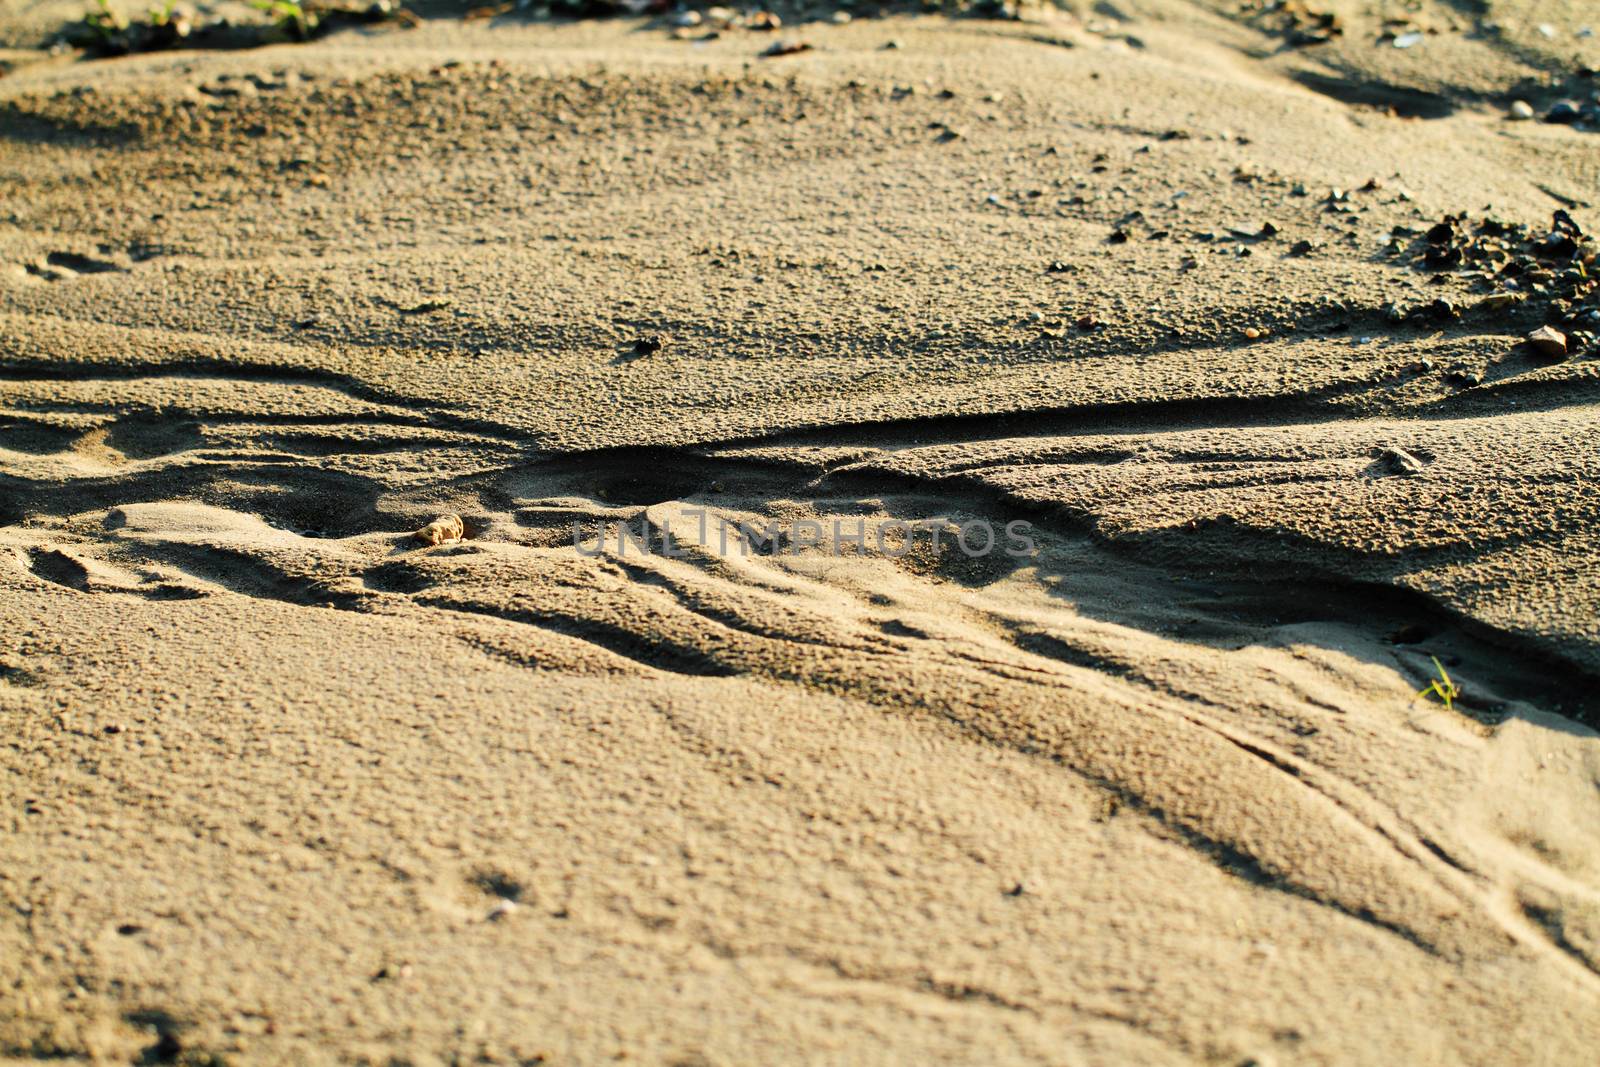 An image of a wet sandy beach line